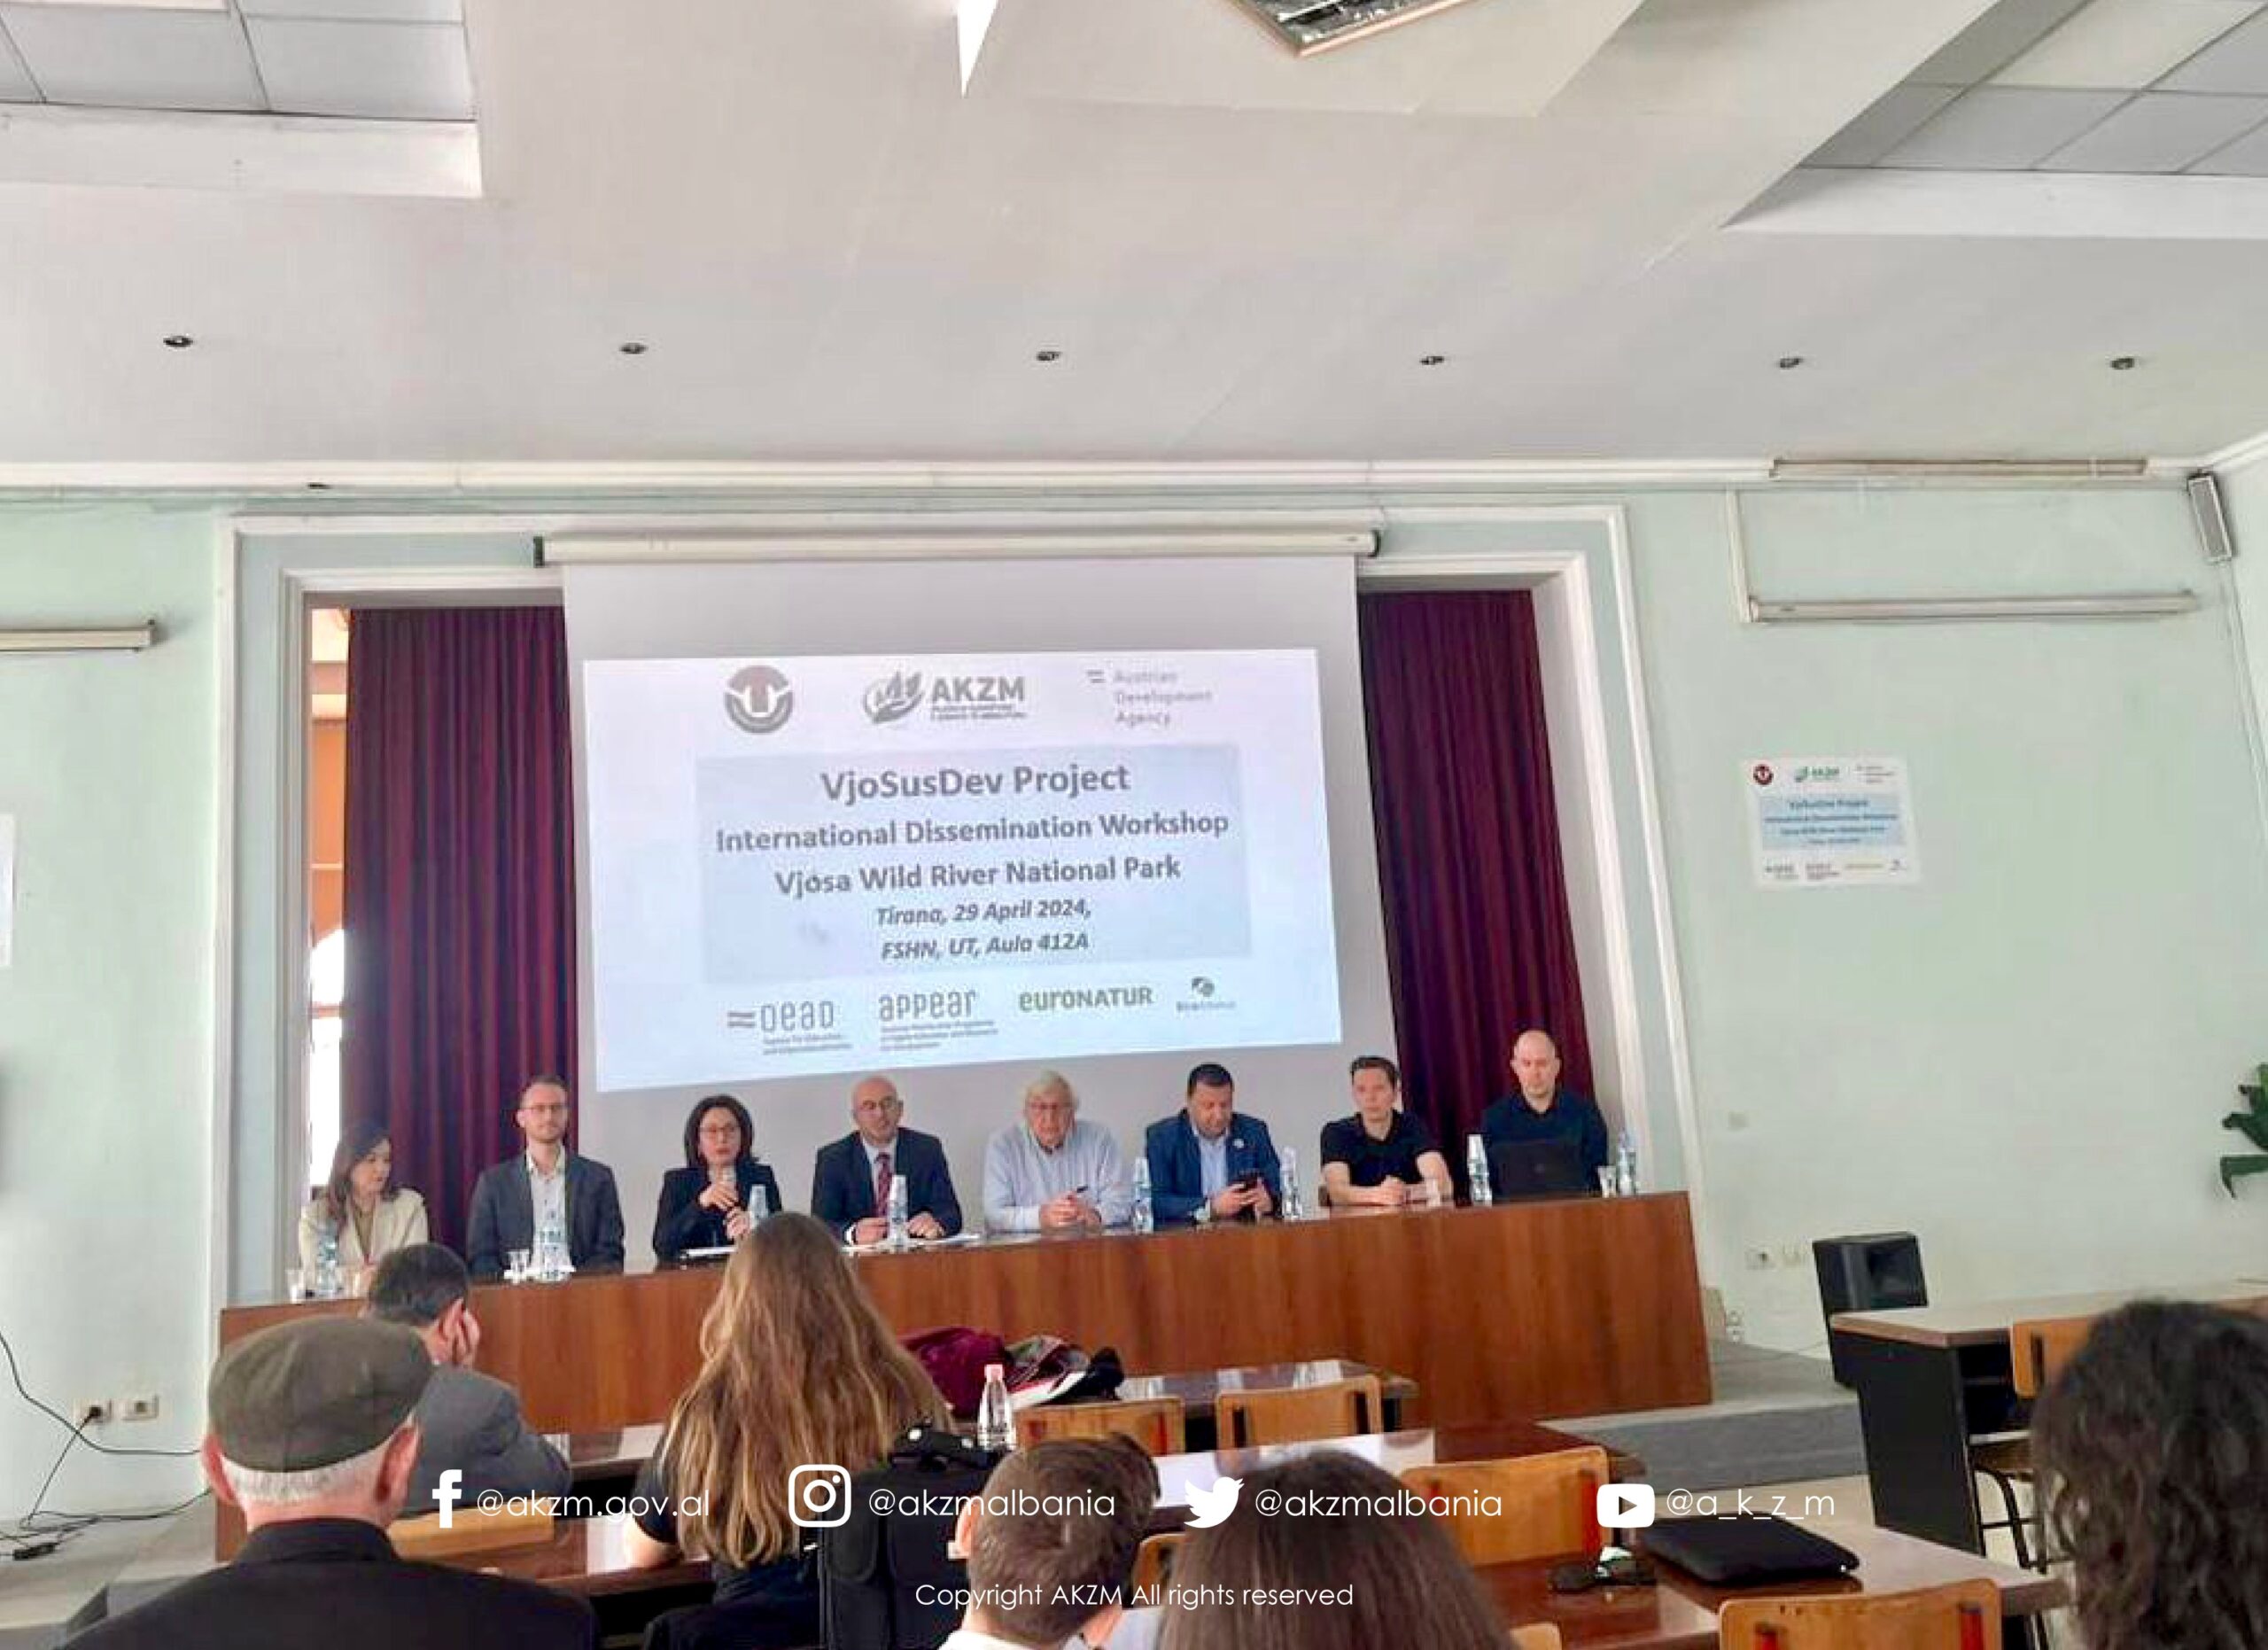 Mbahet në Tiranë konferenca “Parku Kombëtar i Lumit Vjosa-Projekti VjoSusDev”